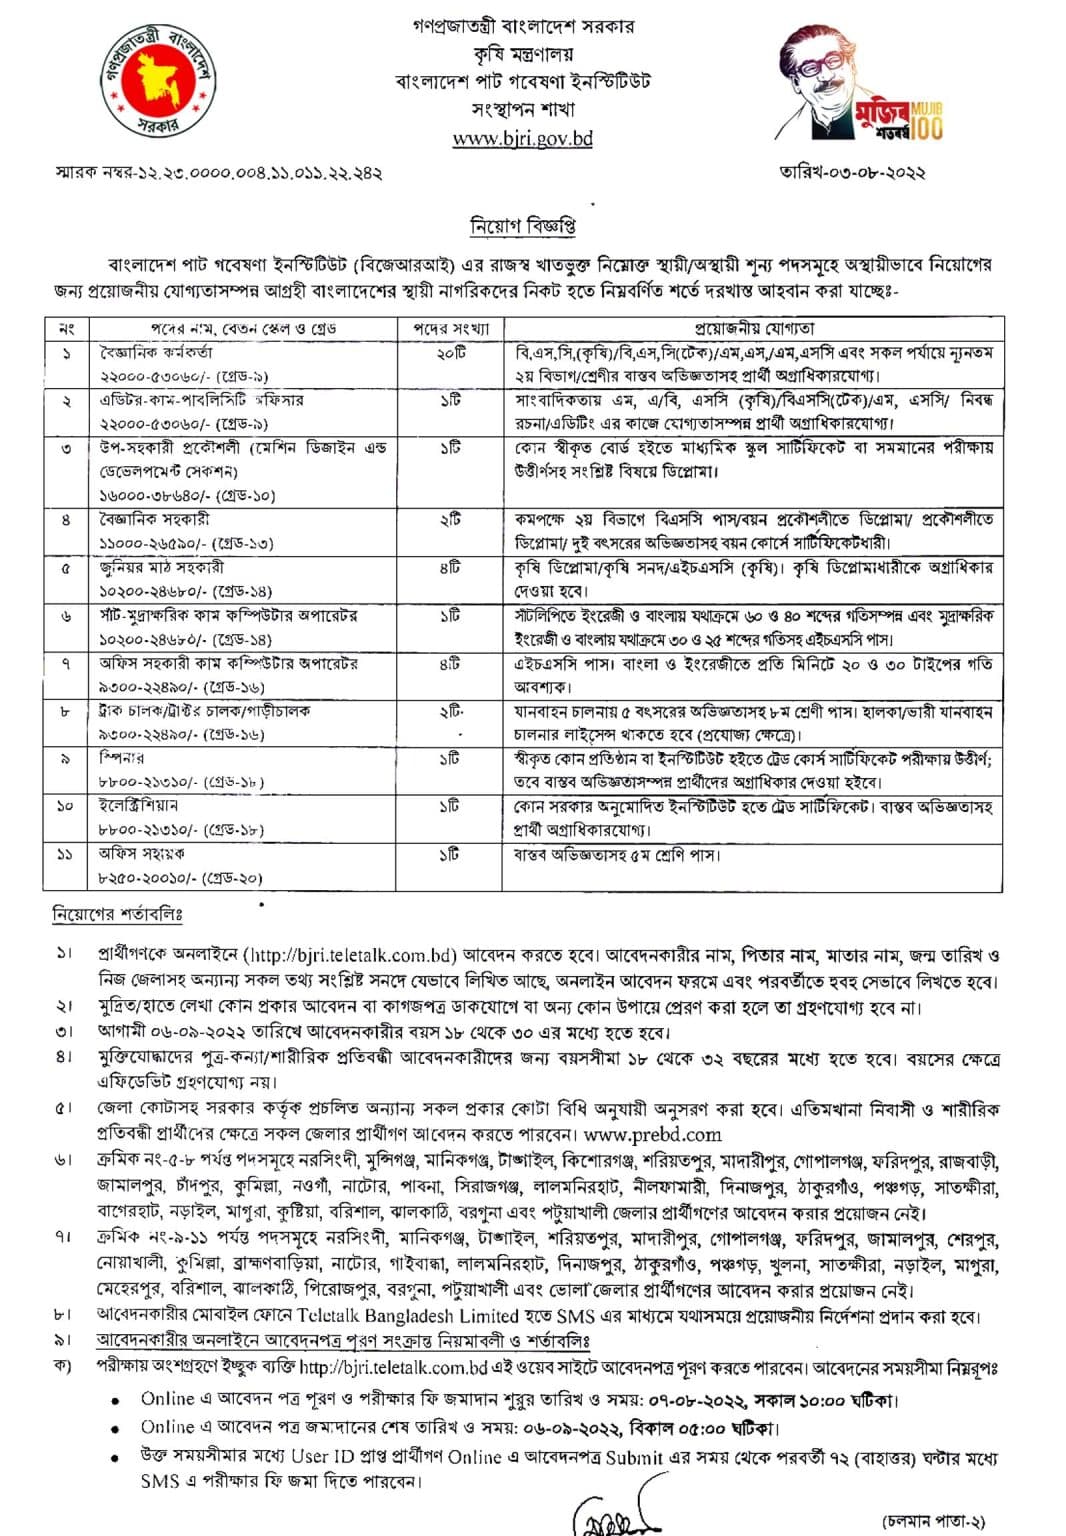 Bangladesh Jute Research Institute Recruitment Circular 2022